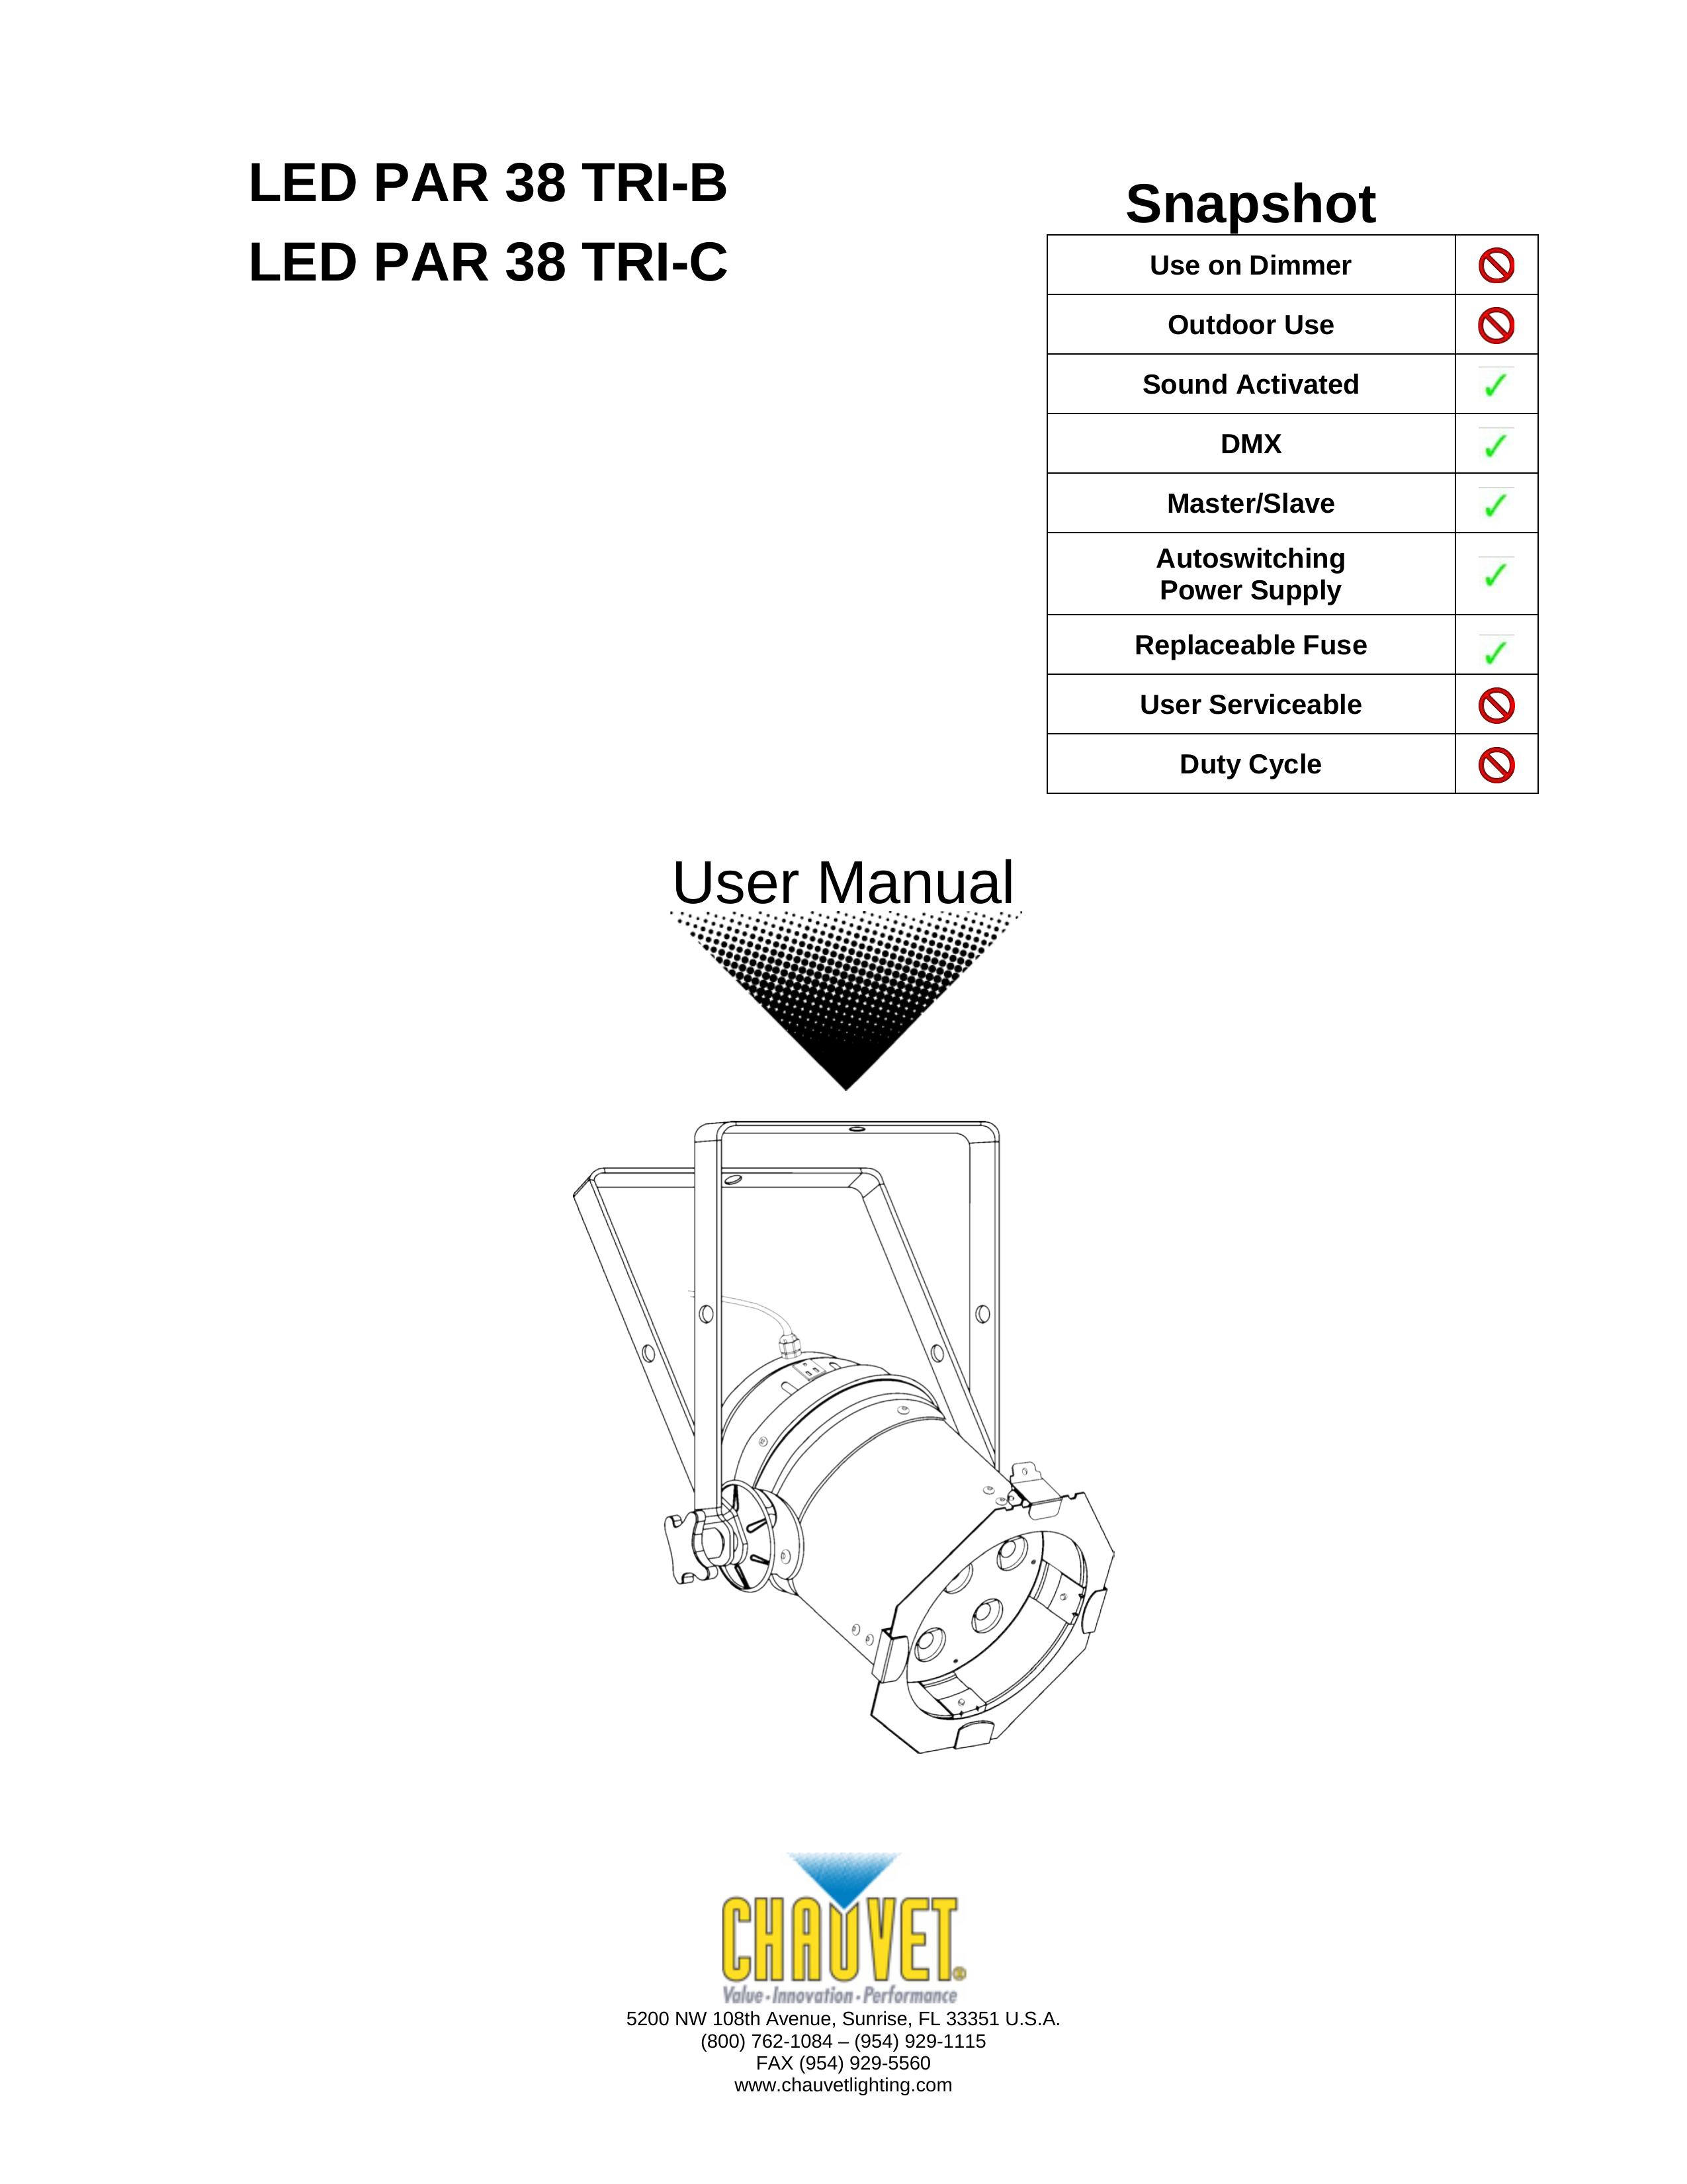 Chauvet led par 38 tri-b Landscape Lighting User Manual